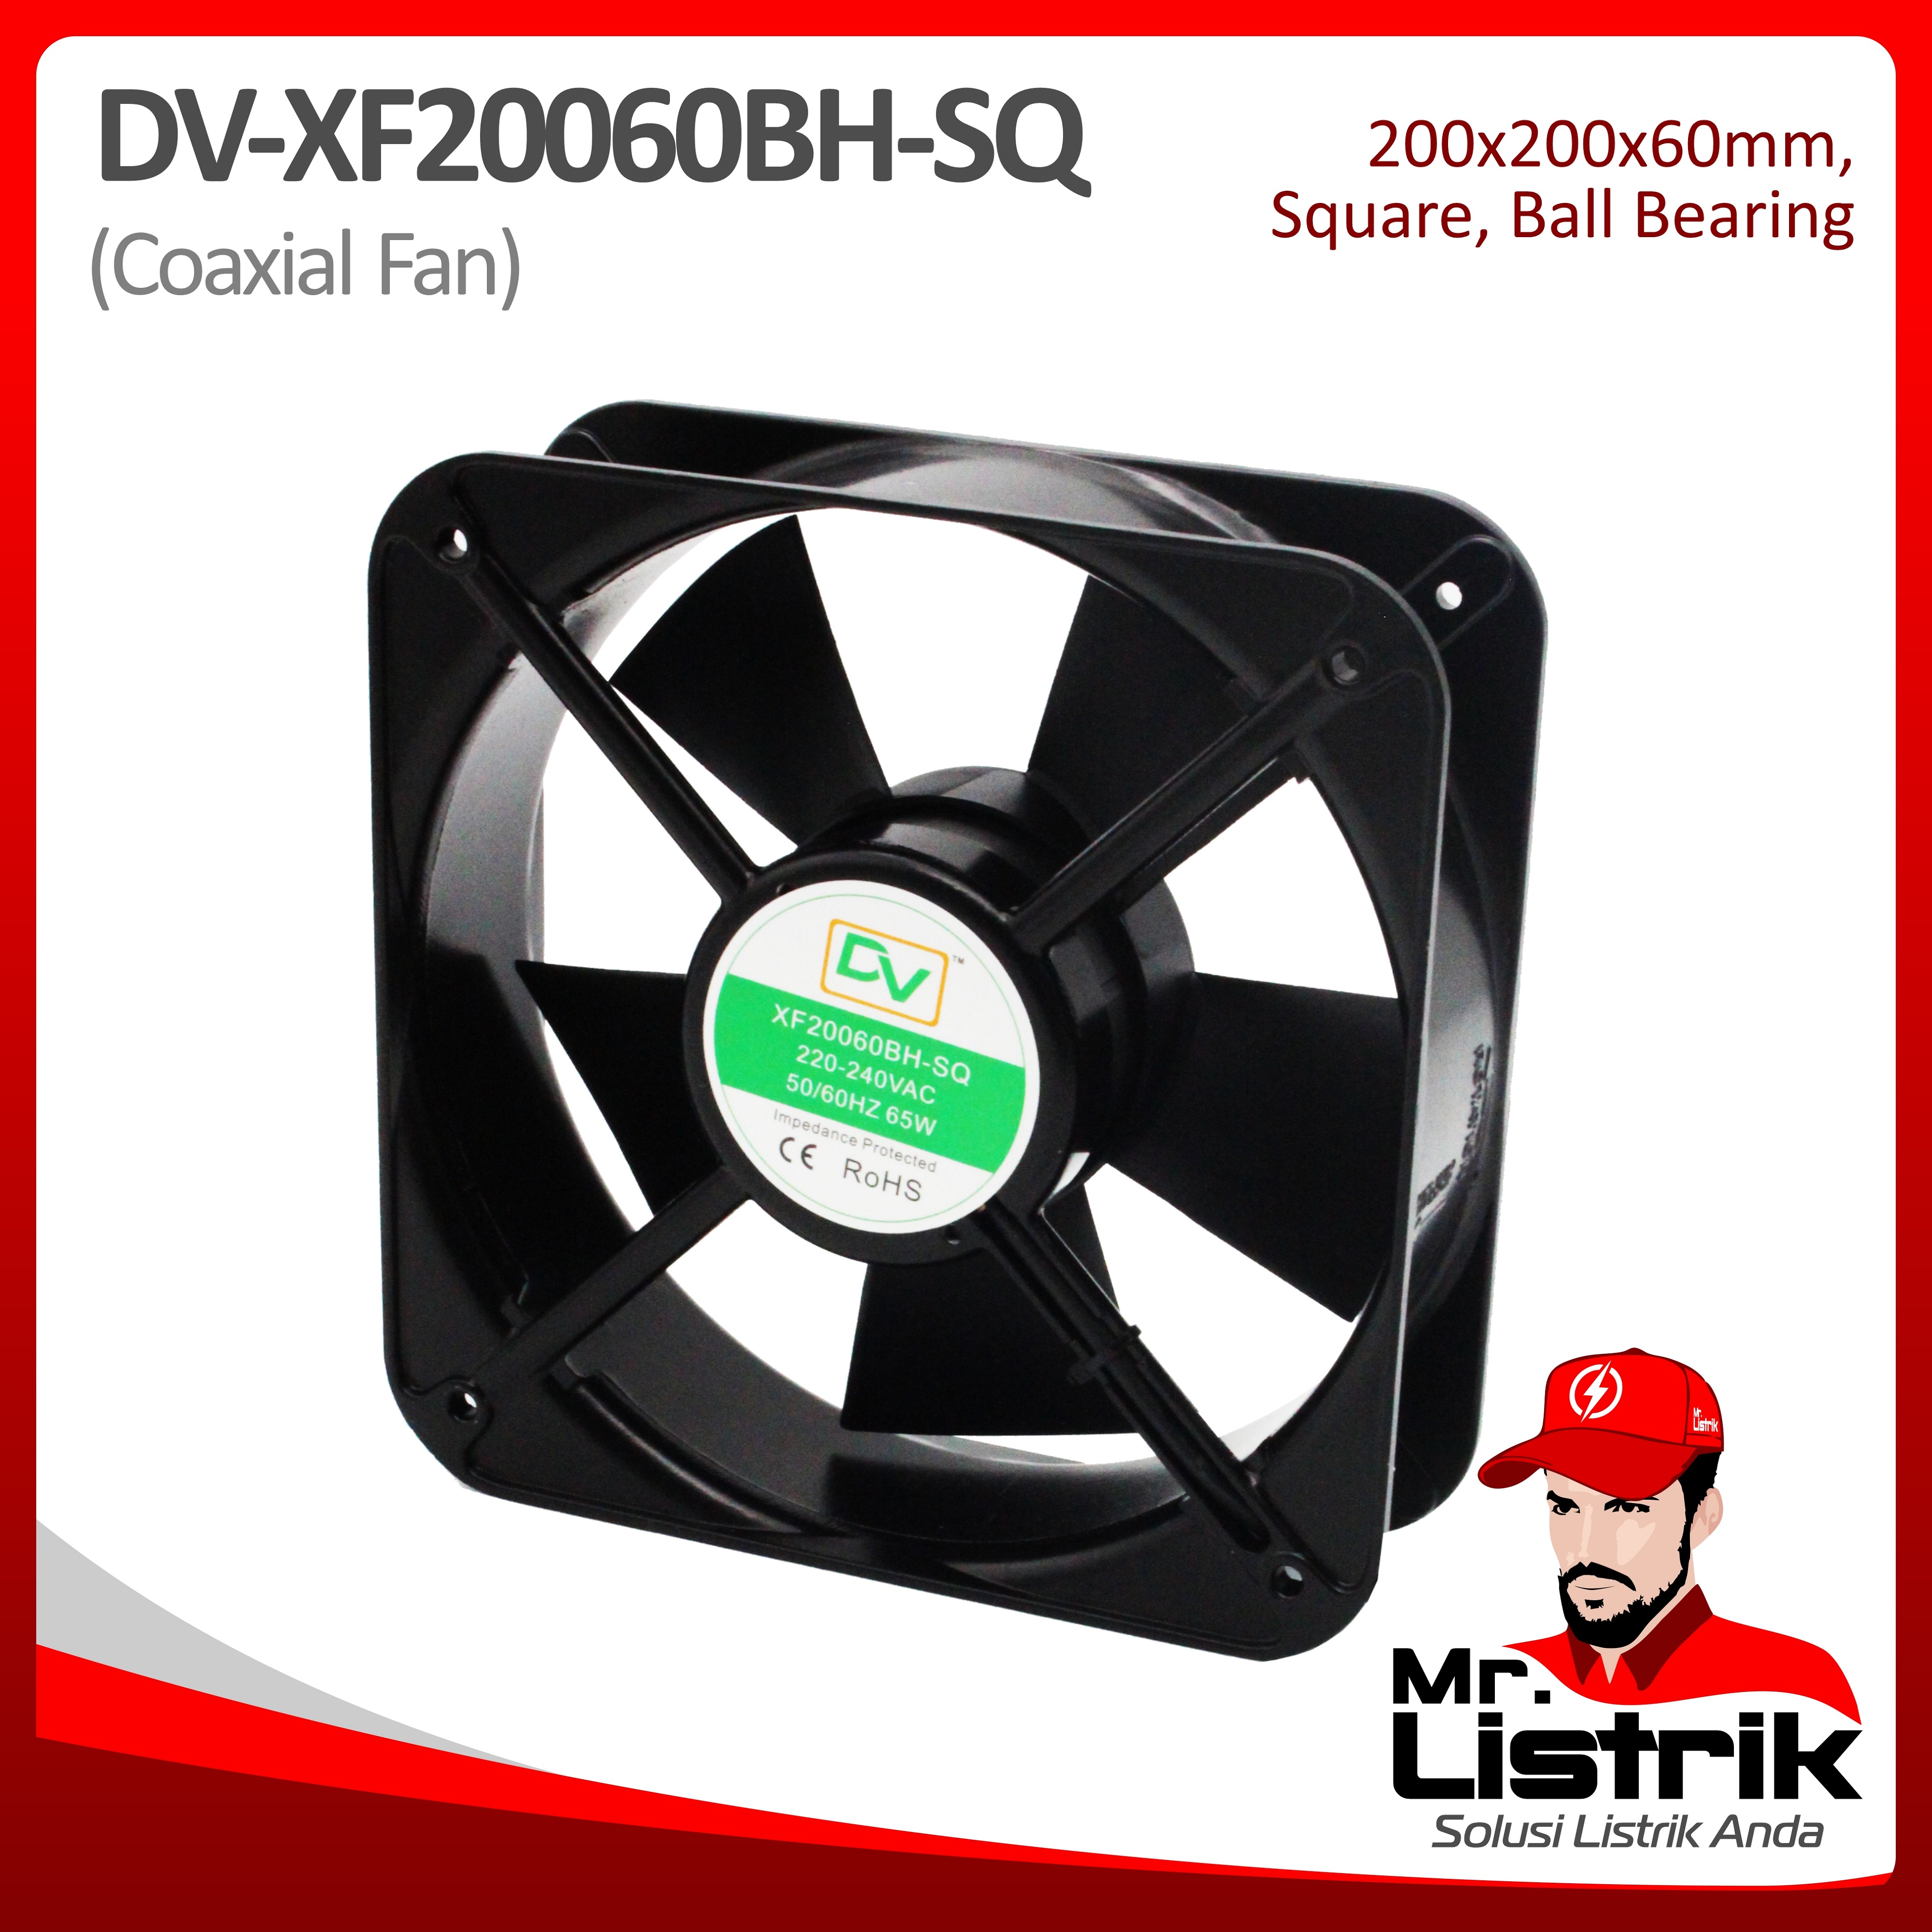 Coaxial Fan 200x200x60 Ball Bearing Square DV XF20060BH-SQ